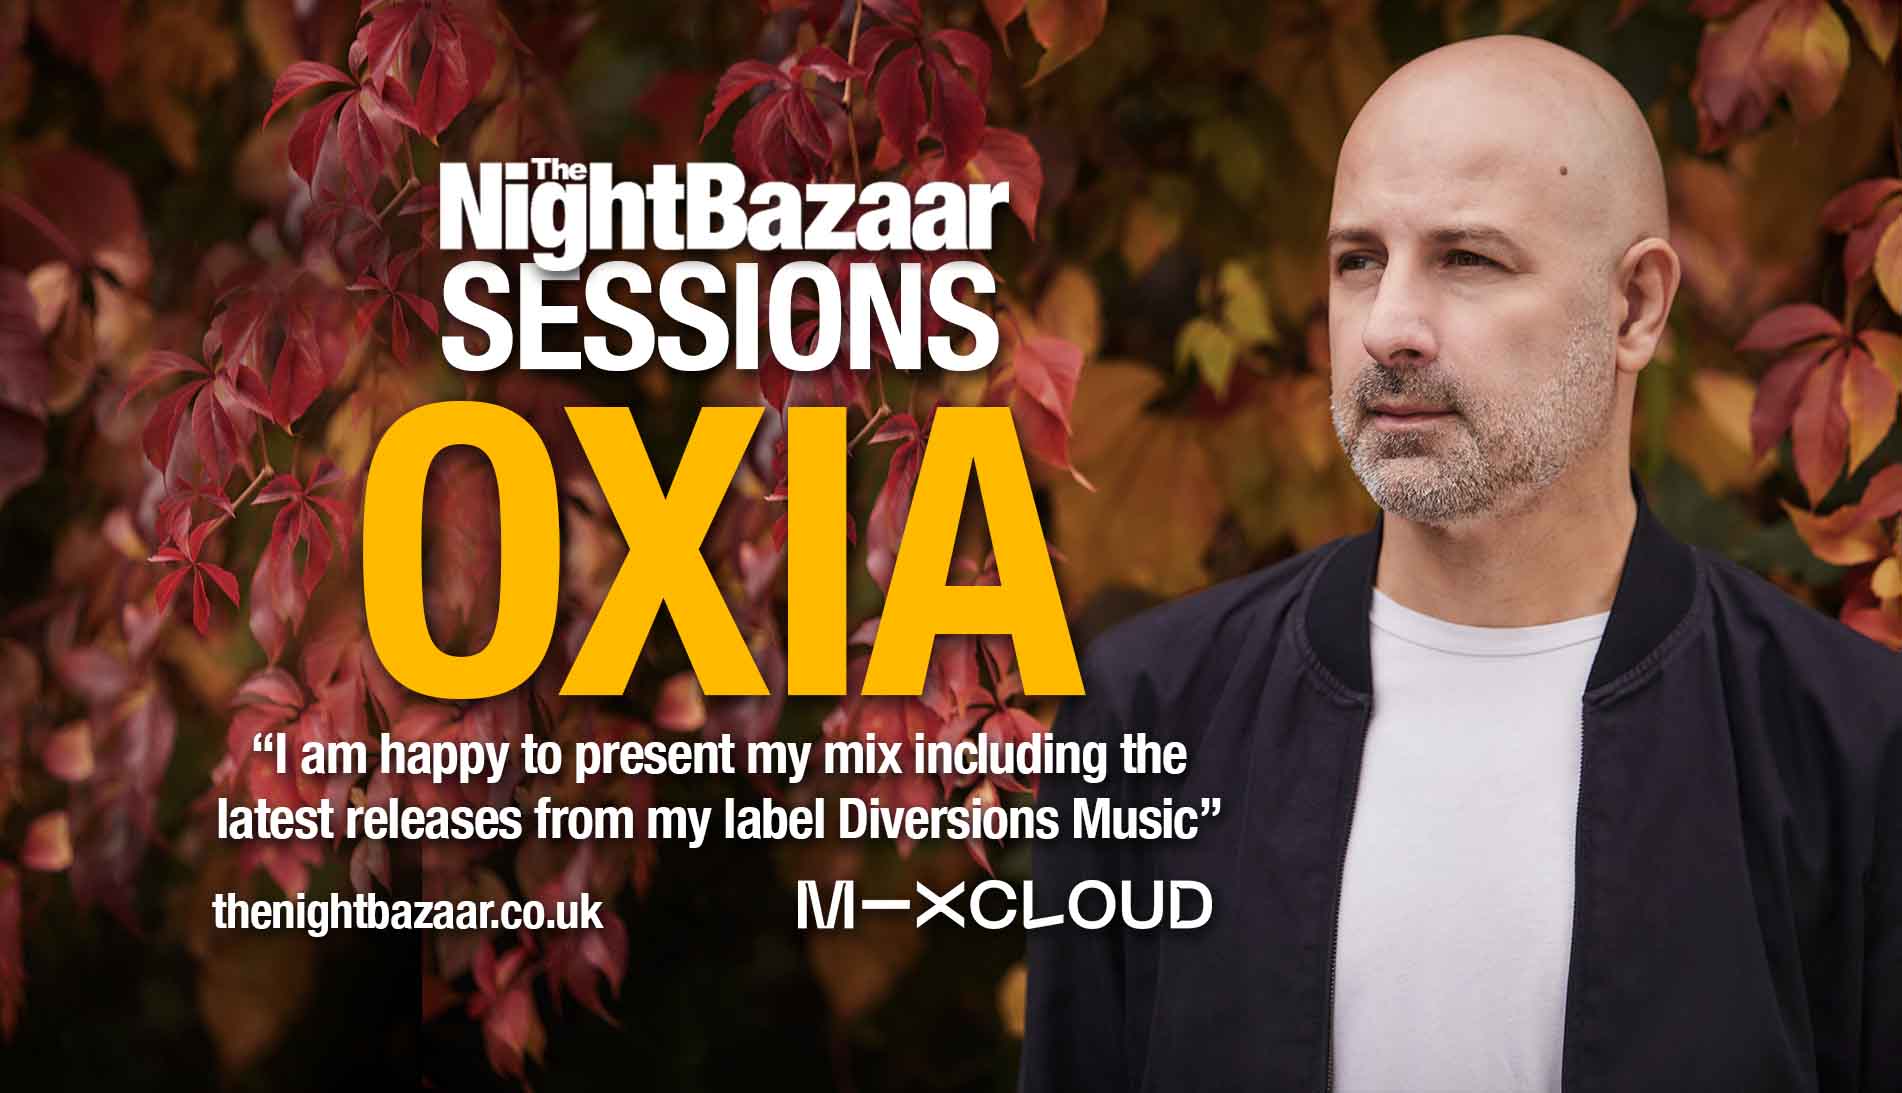 Haz clic o toca la imagen para dirigirte a The Night Bazaar en Mixcloud y escuchar la mezcla de OXIA.